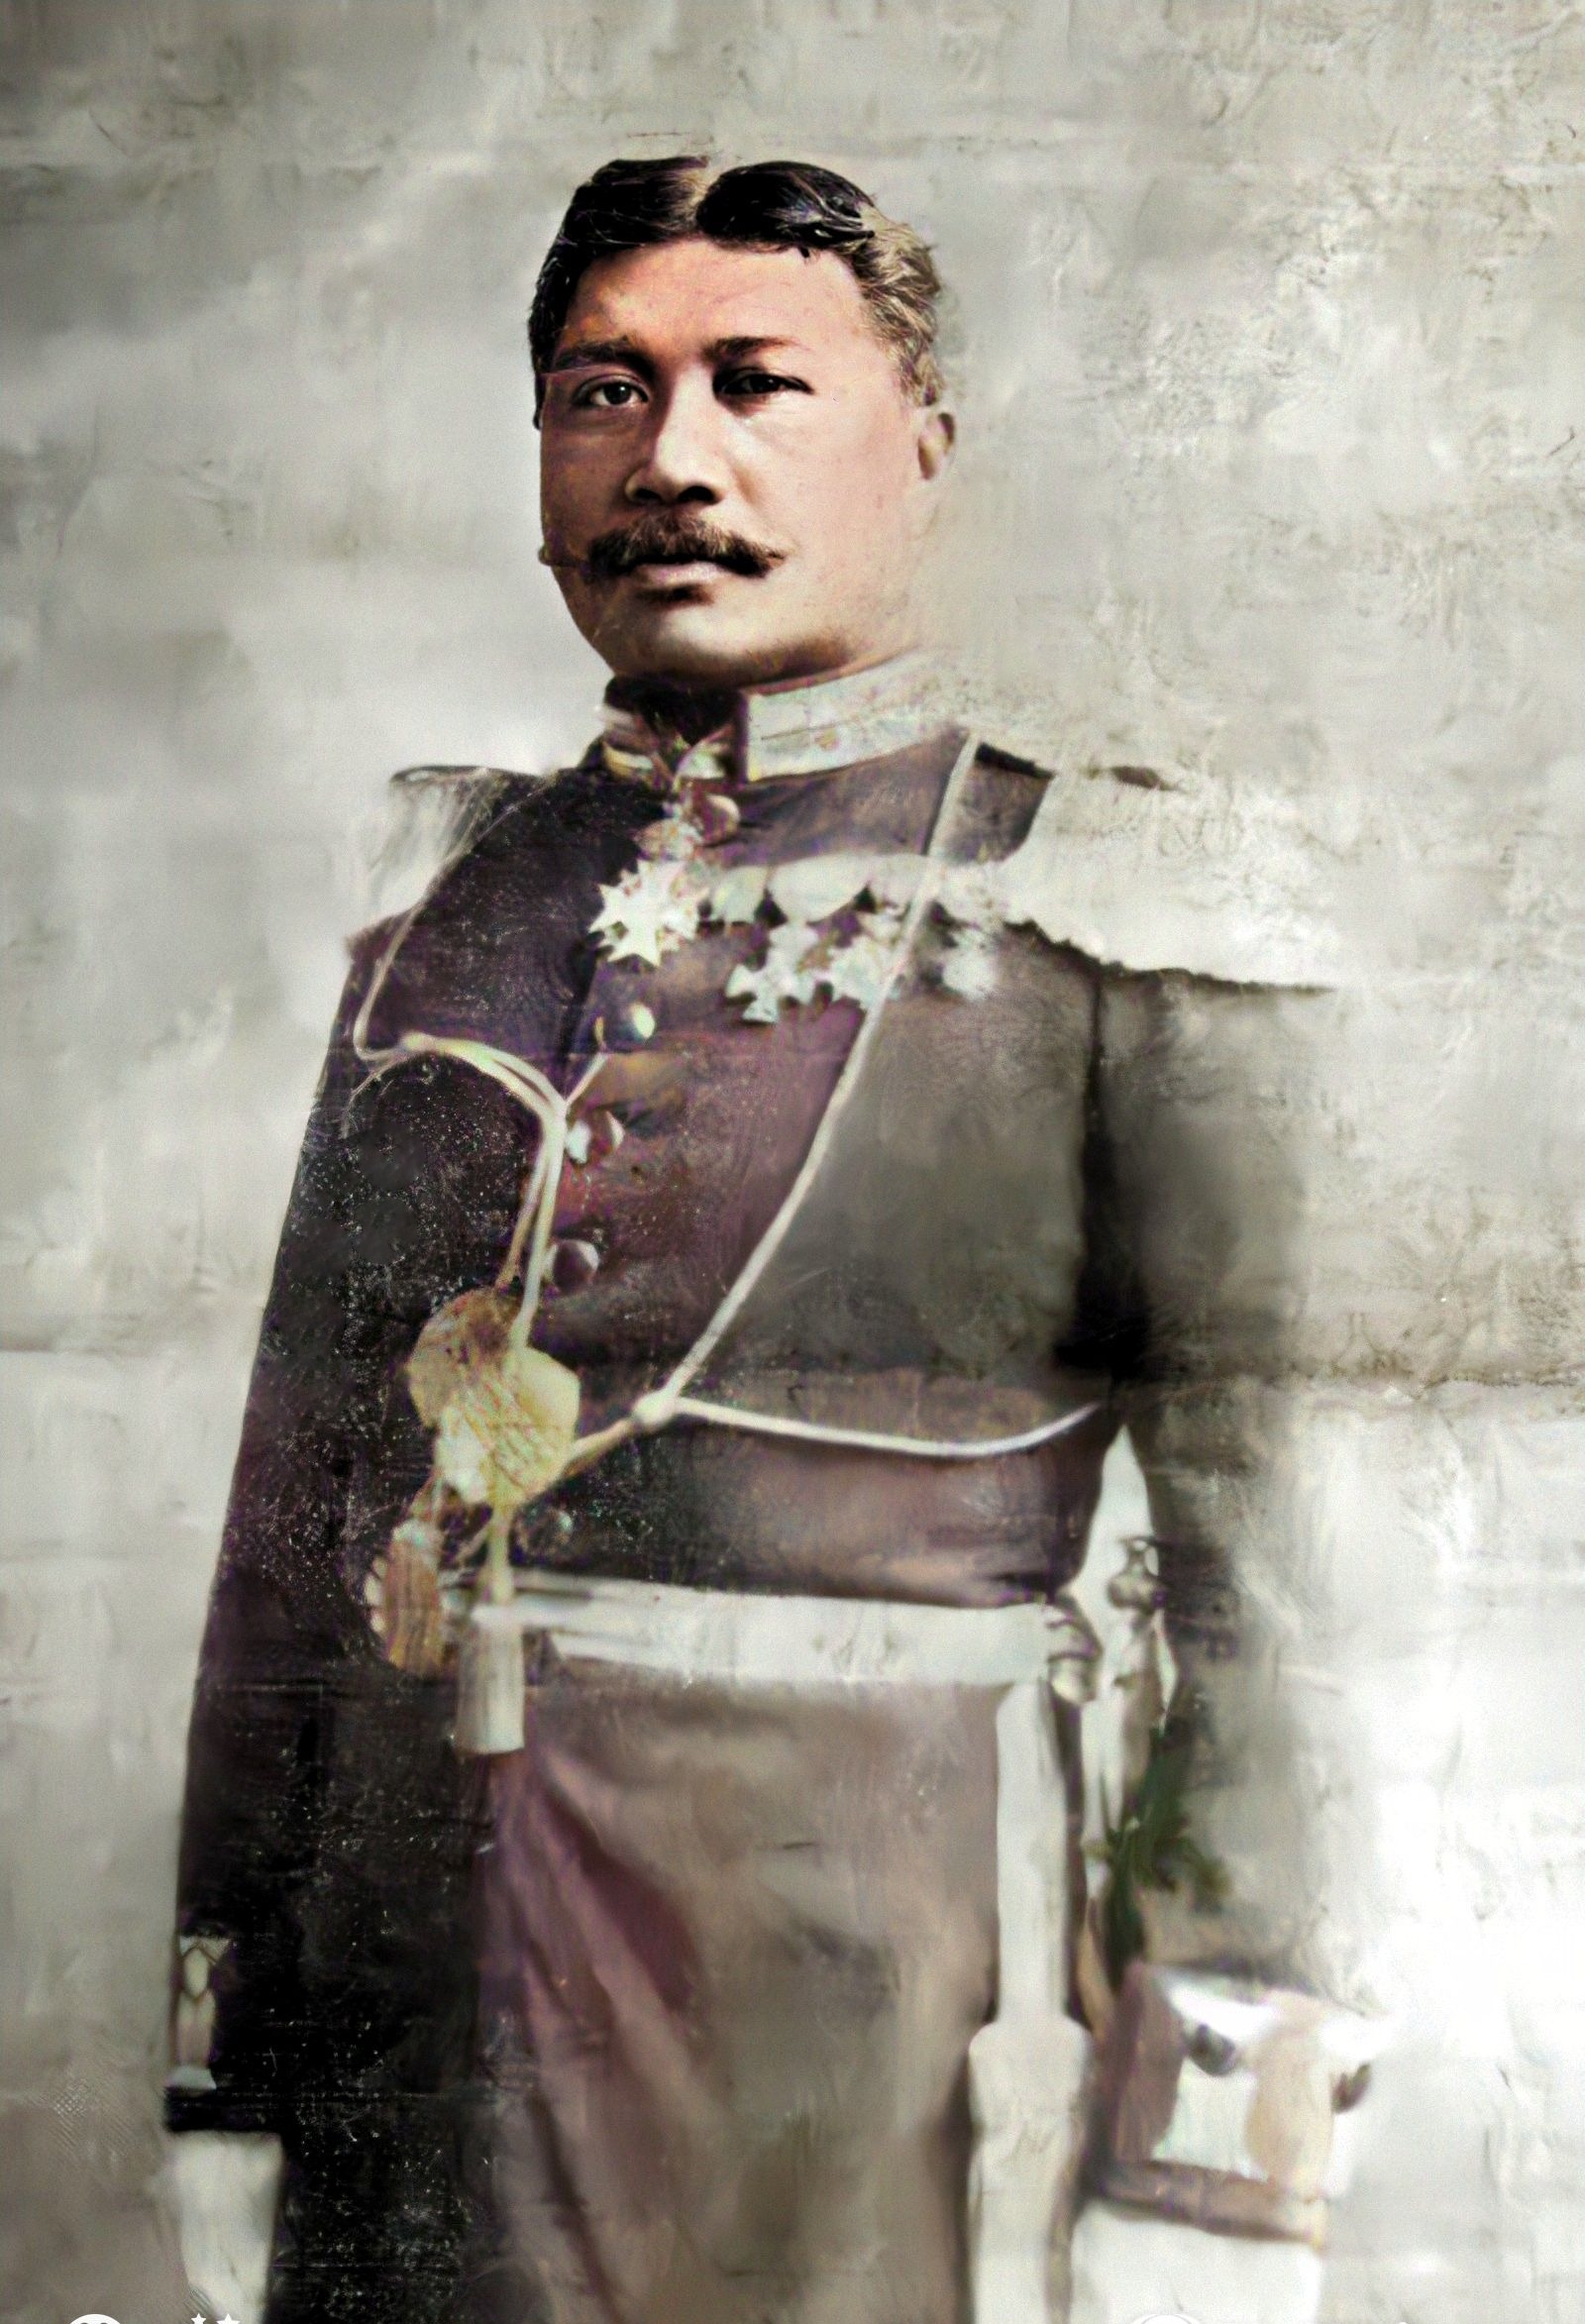 H.E. Col. Robert Hoapili Baker, Prince of Kauai, Royal Governor of Mau'i